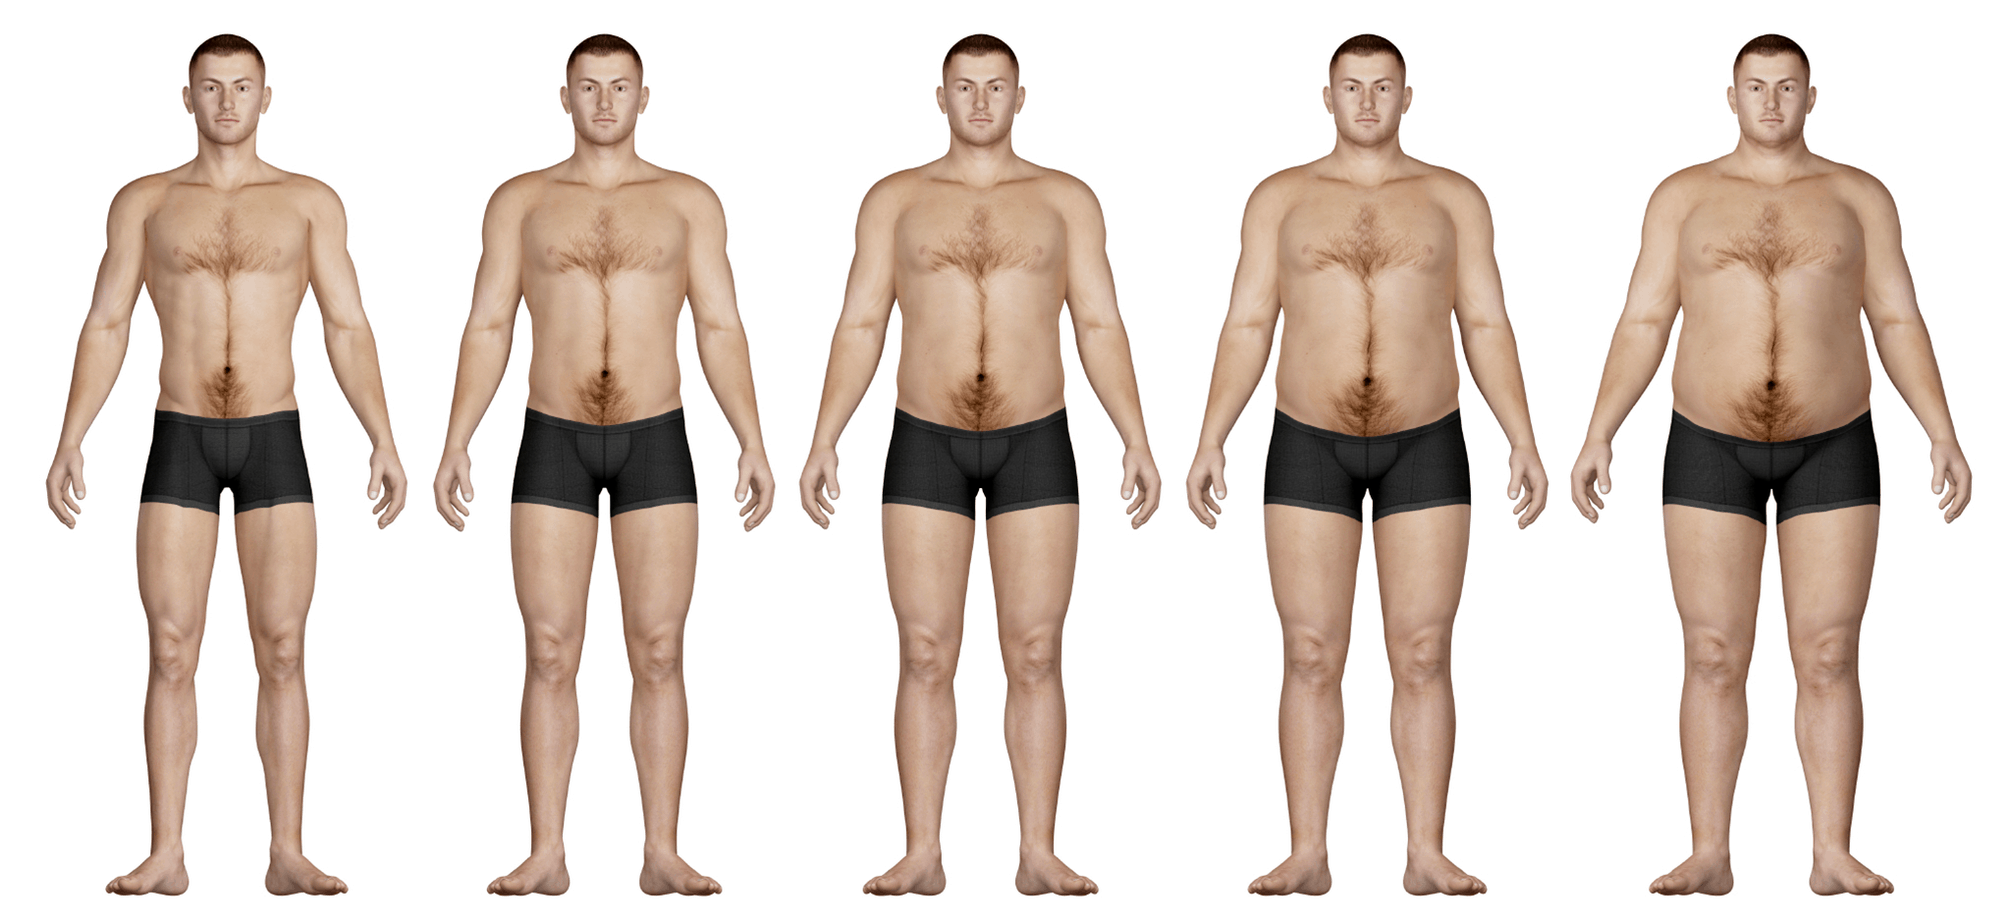 Body types.